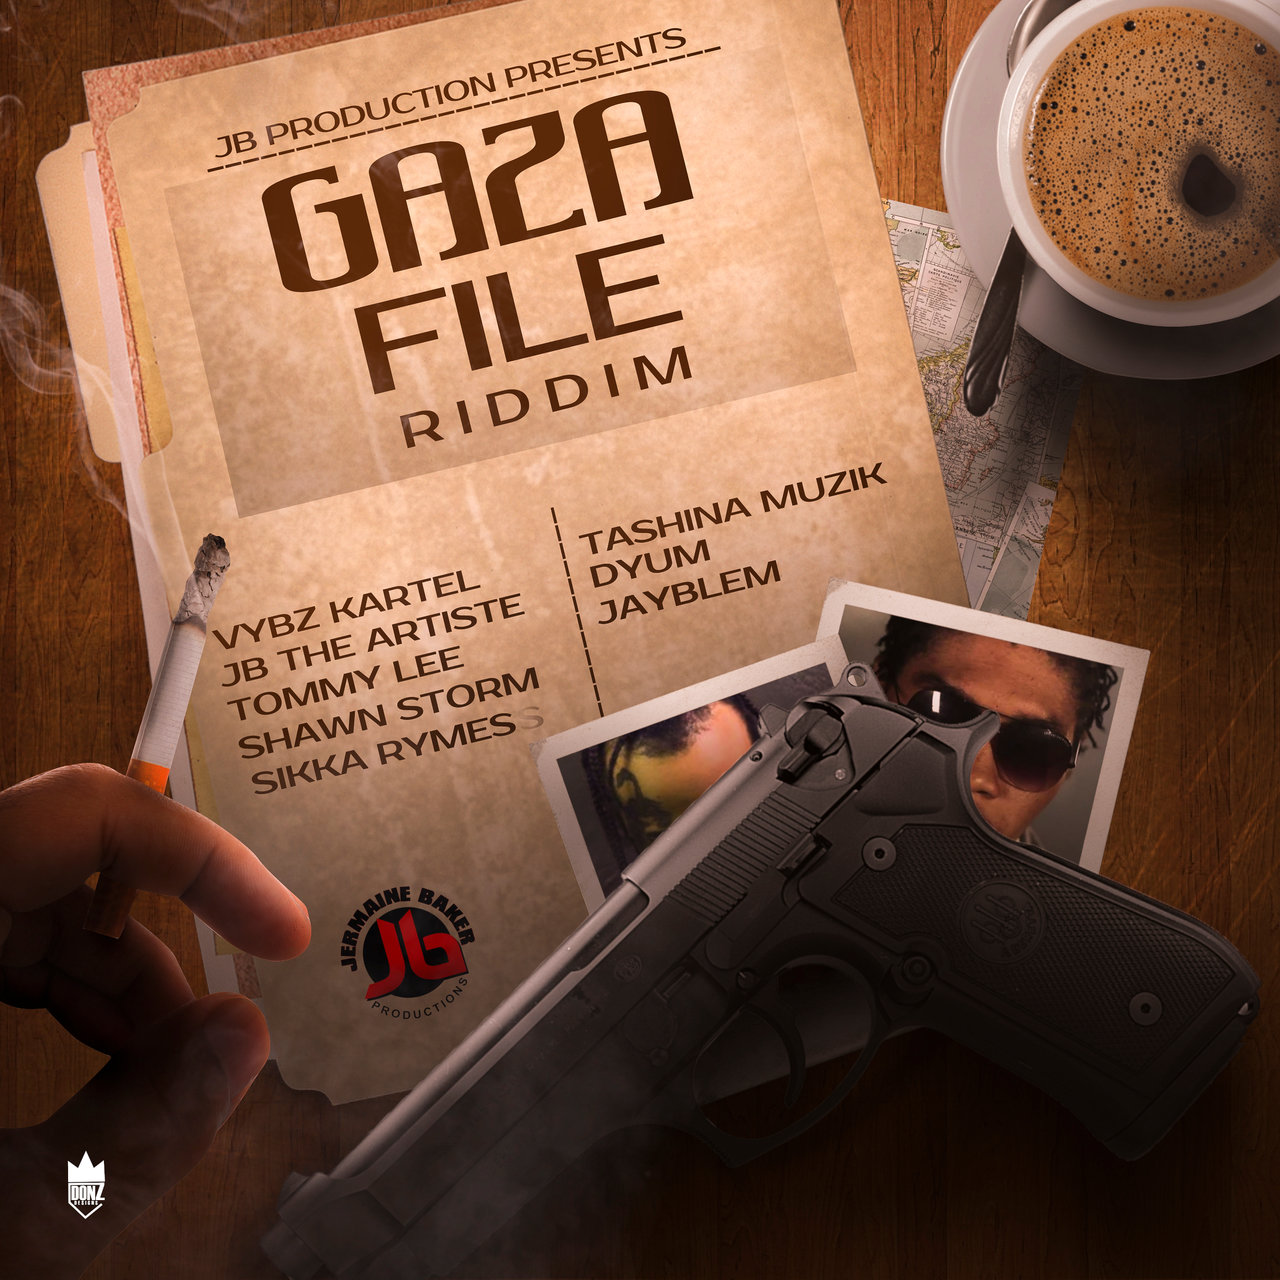 Gaza File Riddim (Cover)